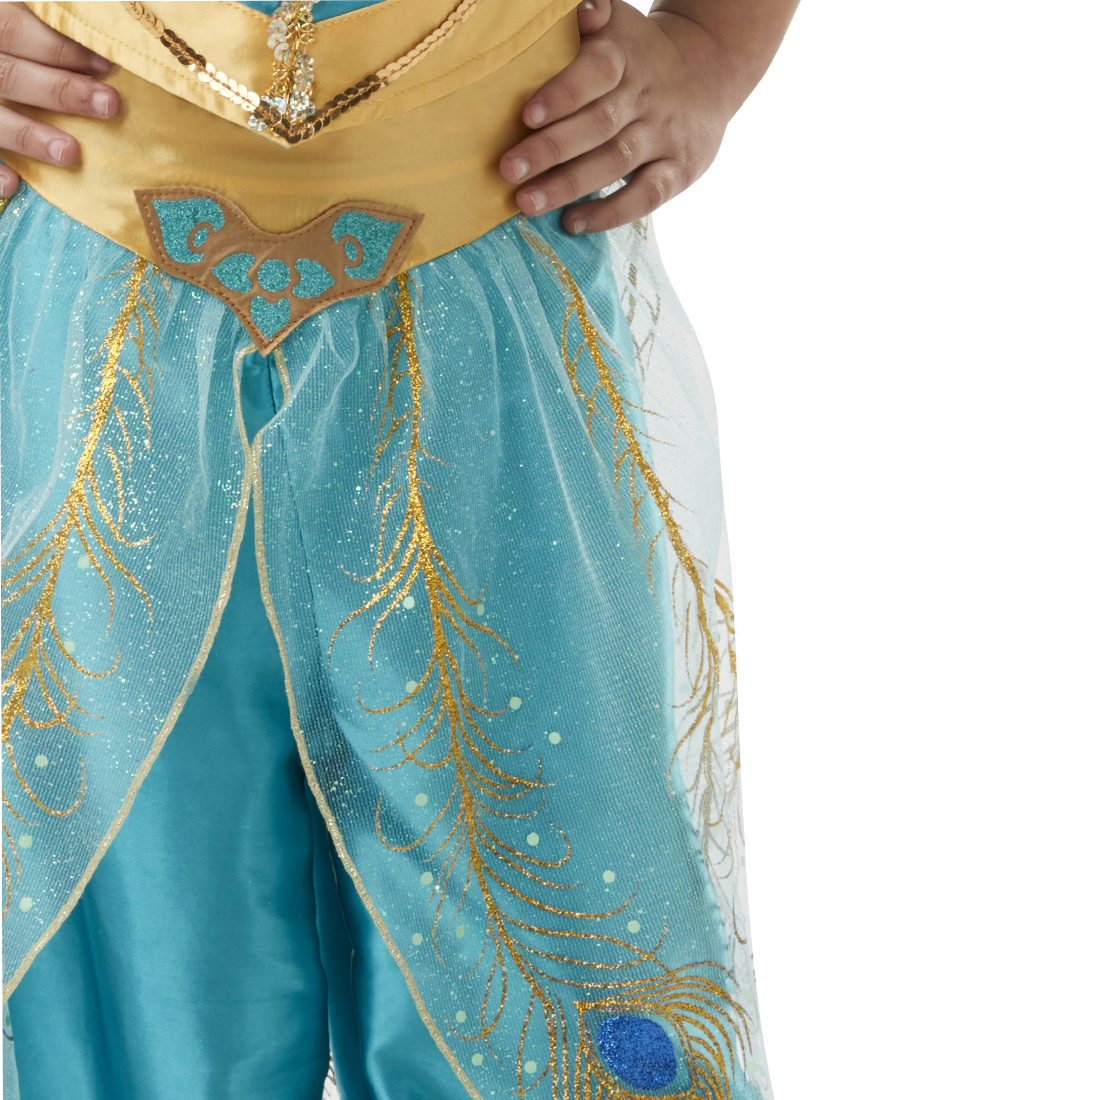 Child Jasmine Live Action Aladdin Costume